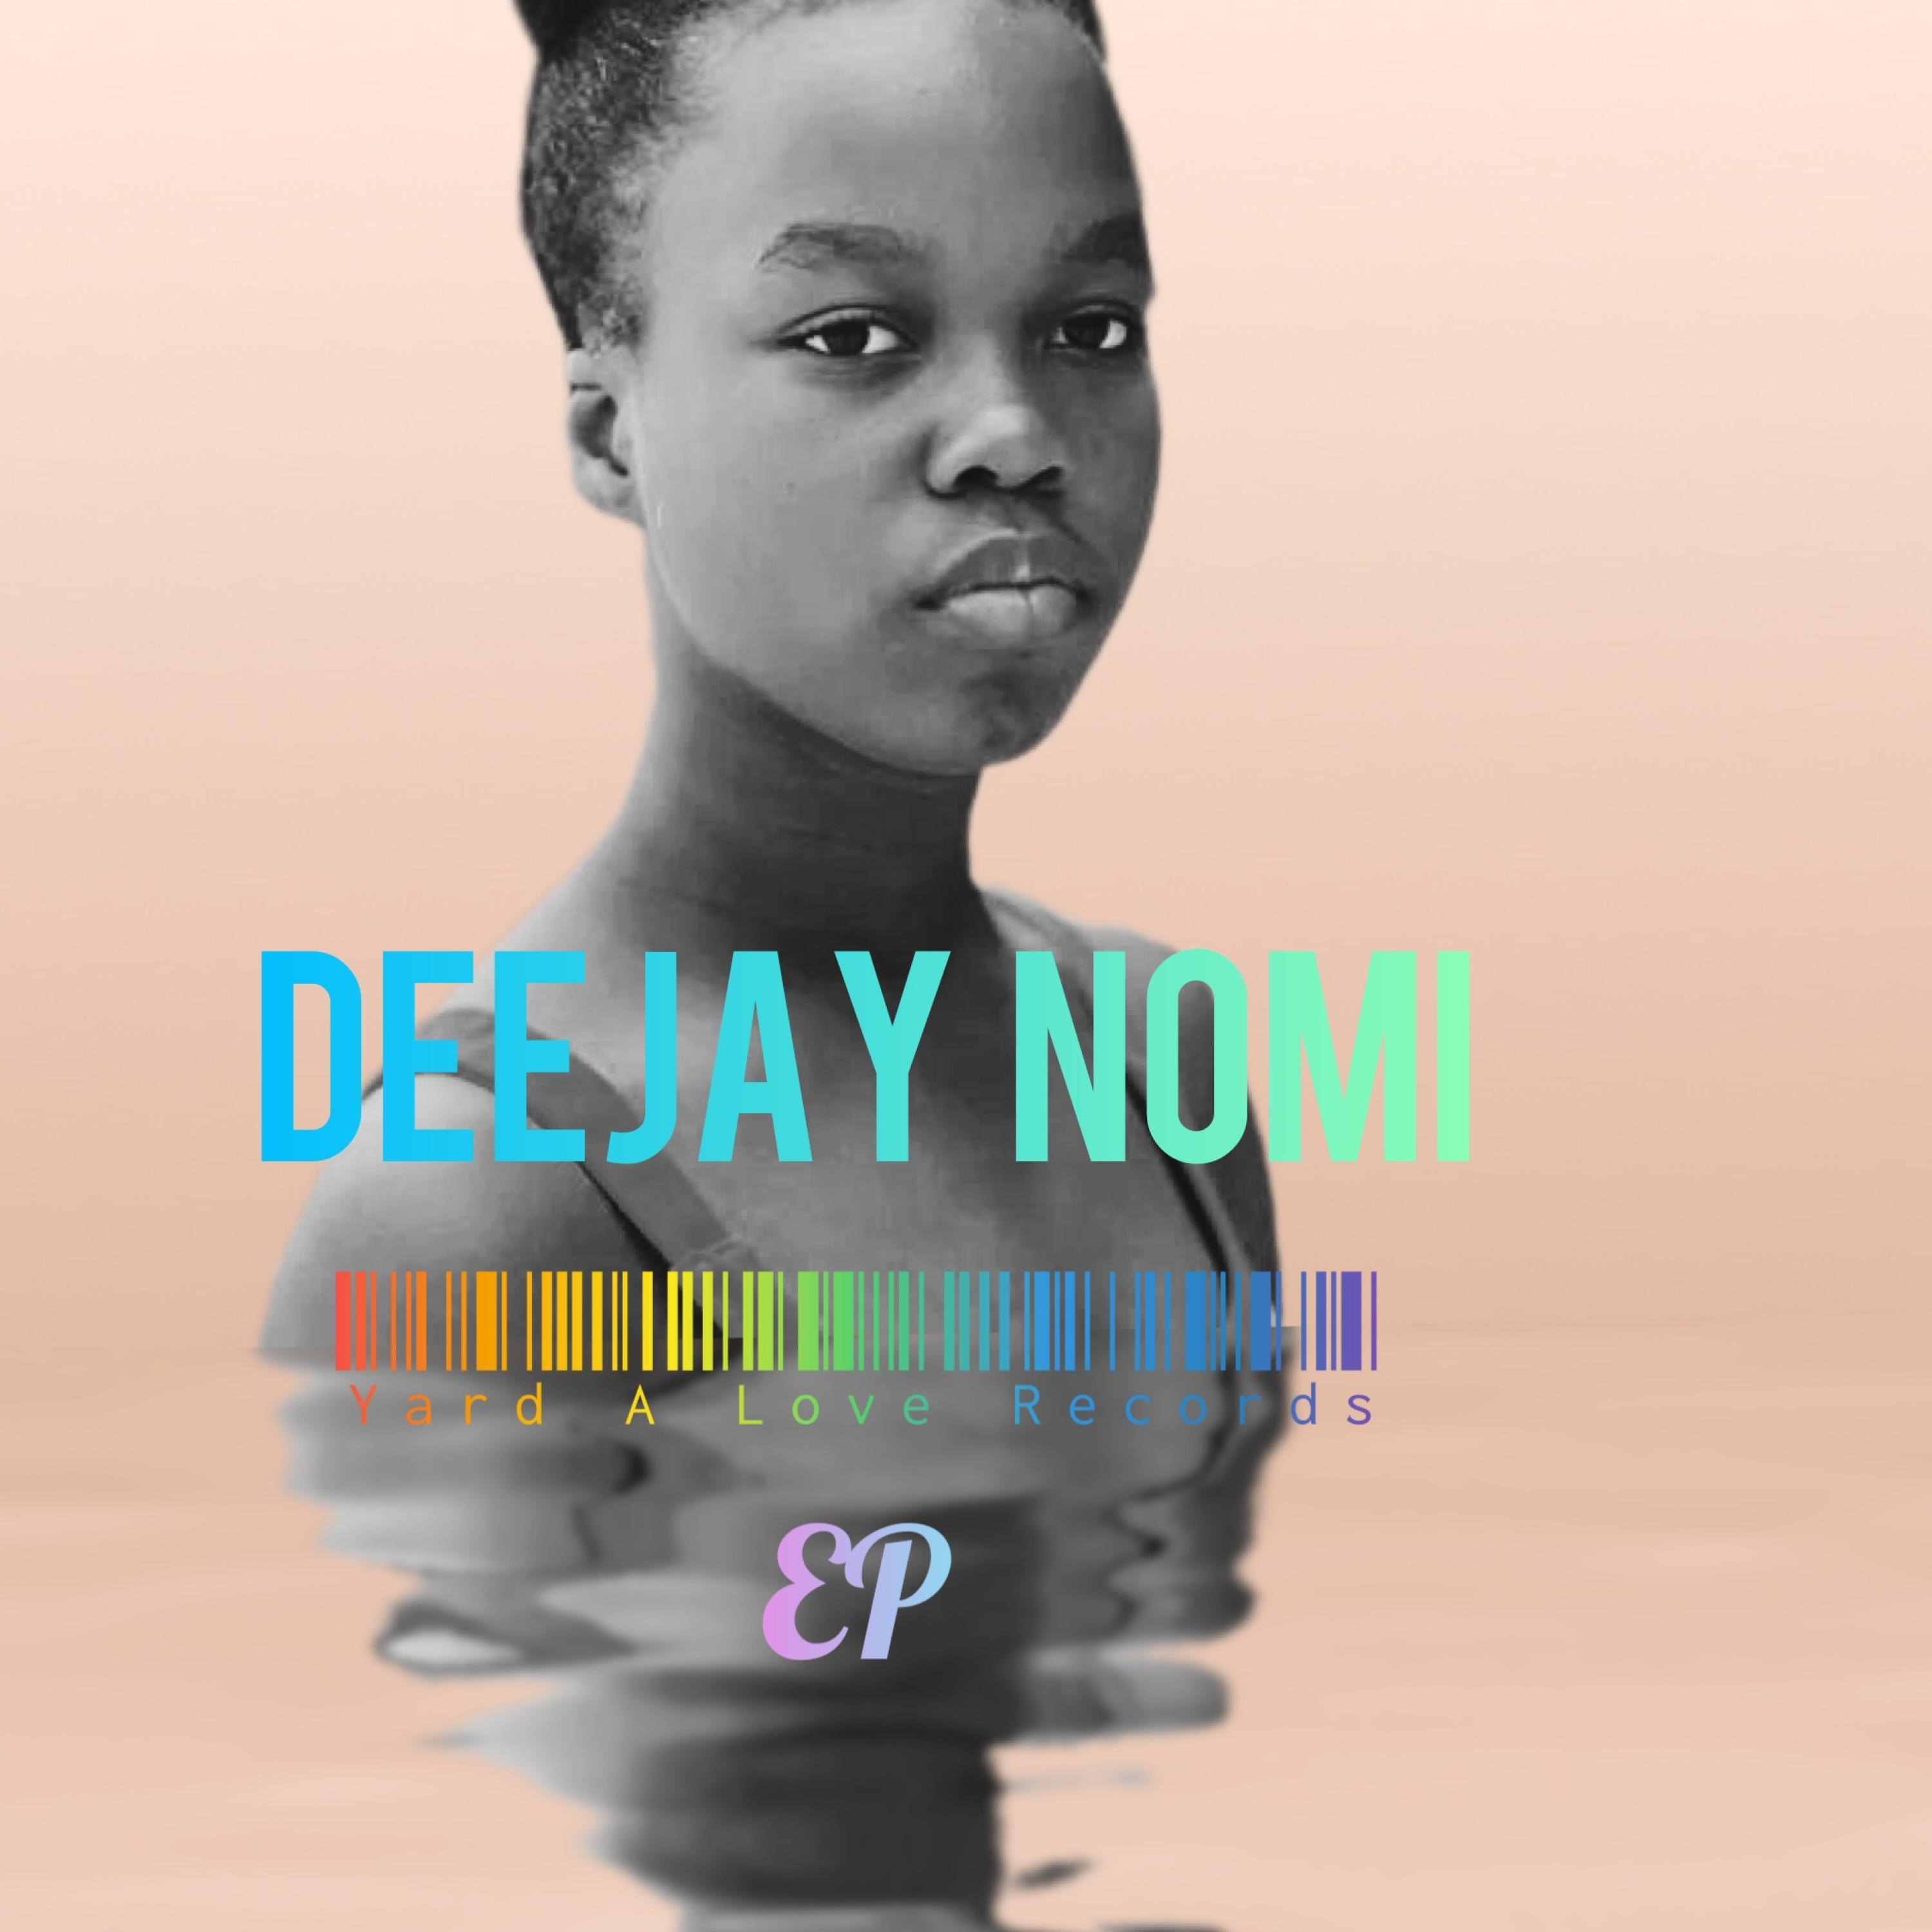 Deejay Nomi - I Got The Bag